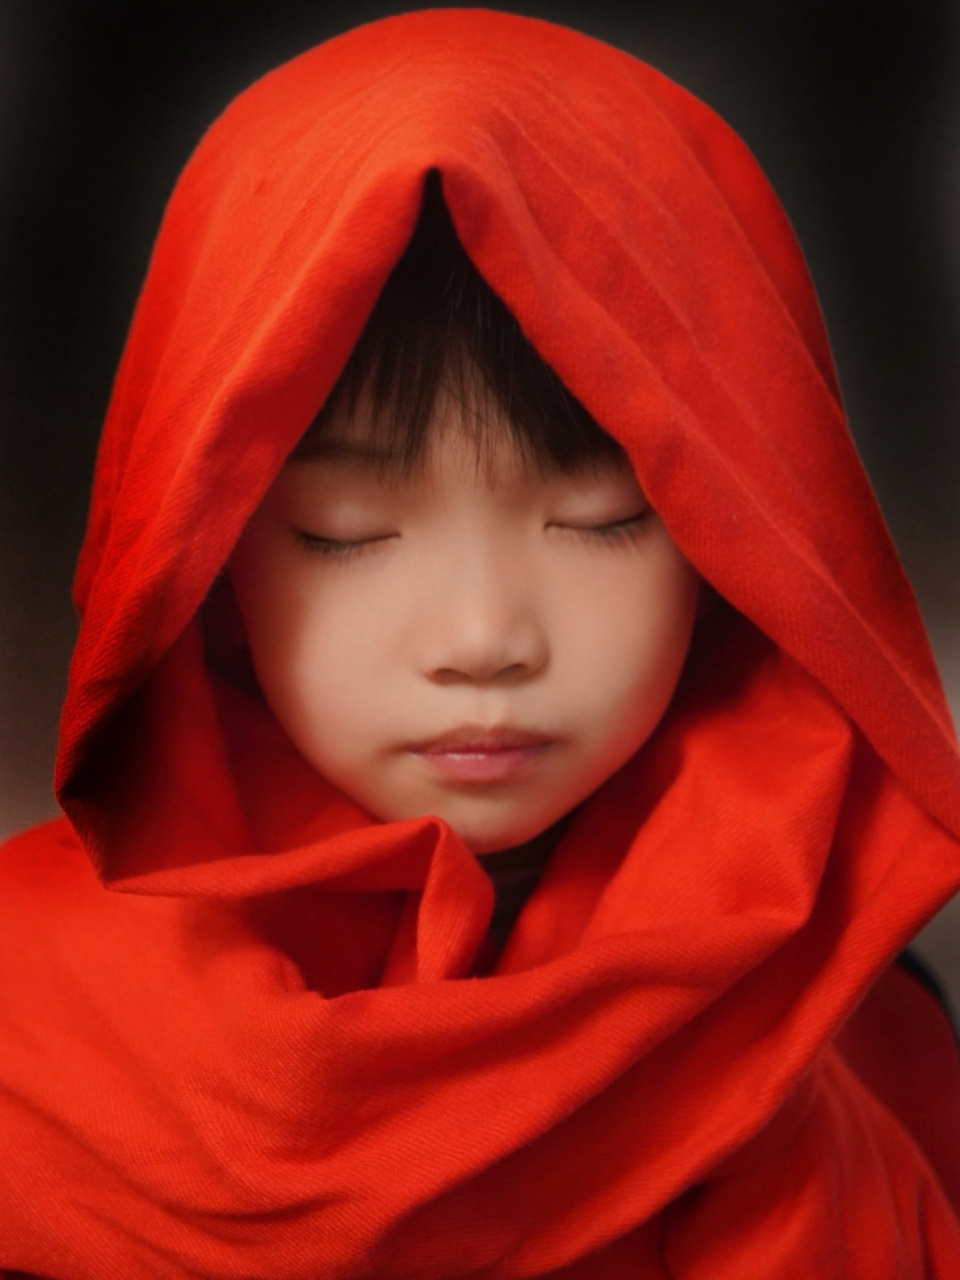 世界名画儿童模仿秀之《戴红围巾的女孩》 五分钟搞定模仿秀,超级简单